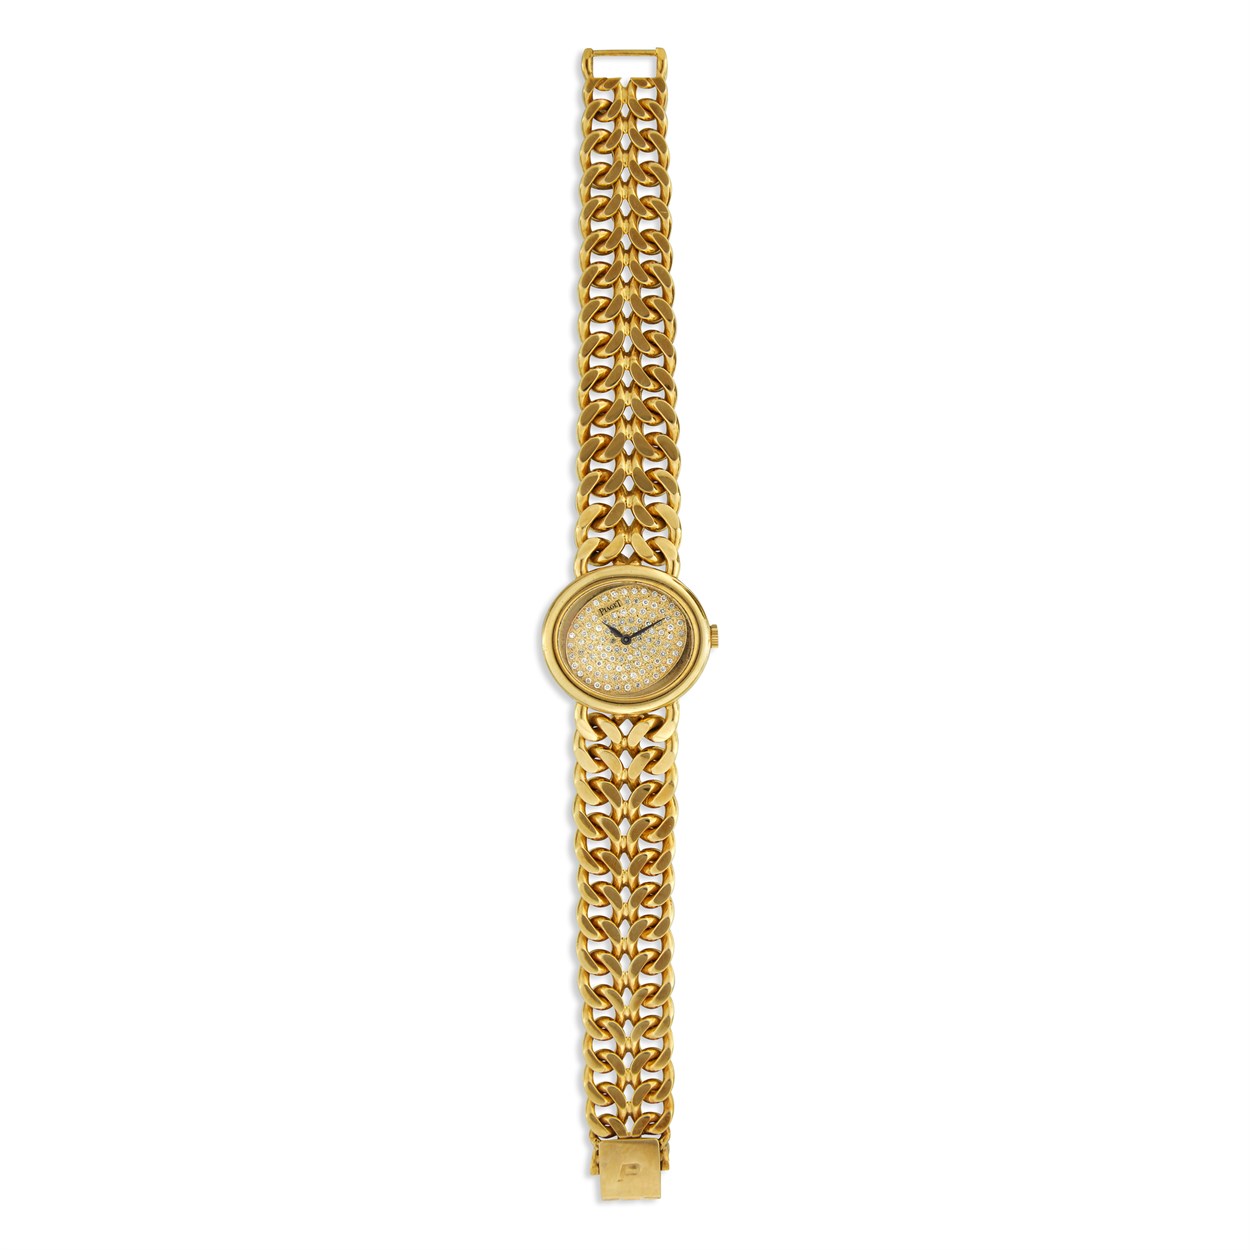 Lot 85 - An eighteen karat gold and diamond bracelet wristwatch, Piaget